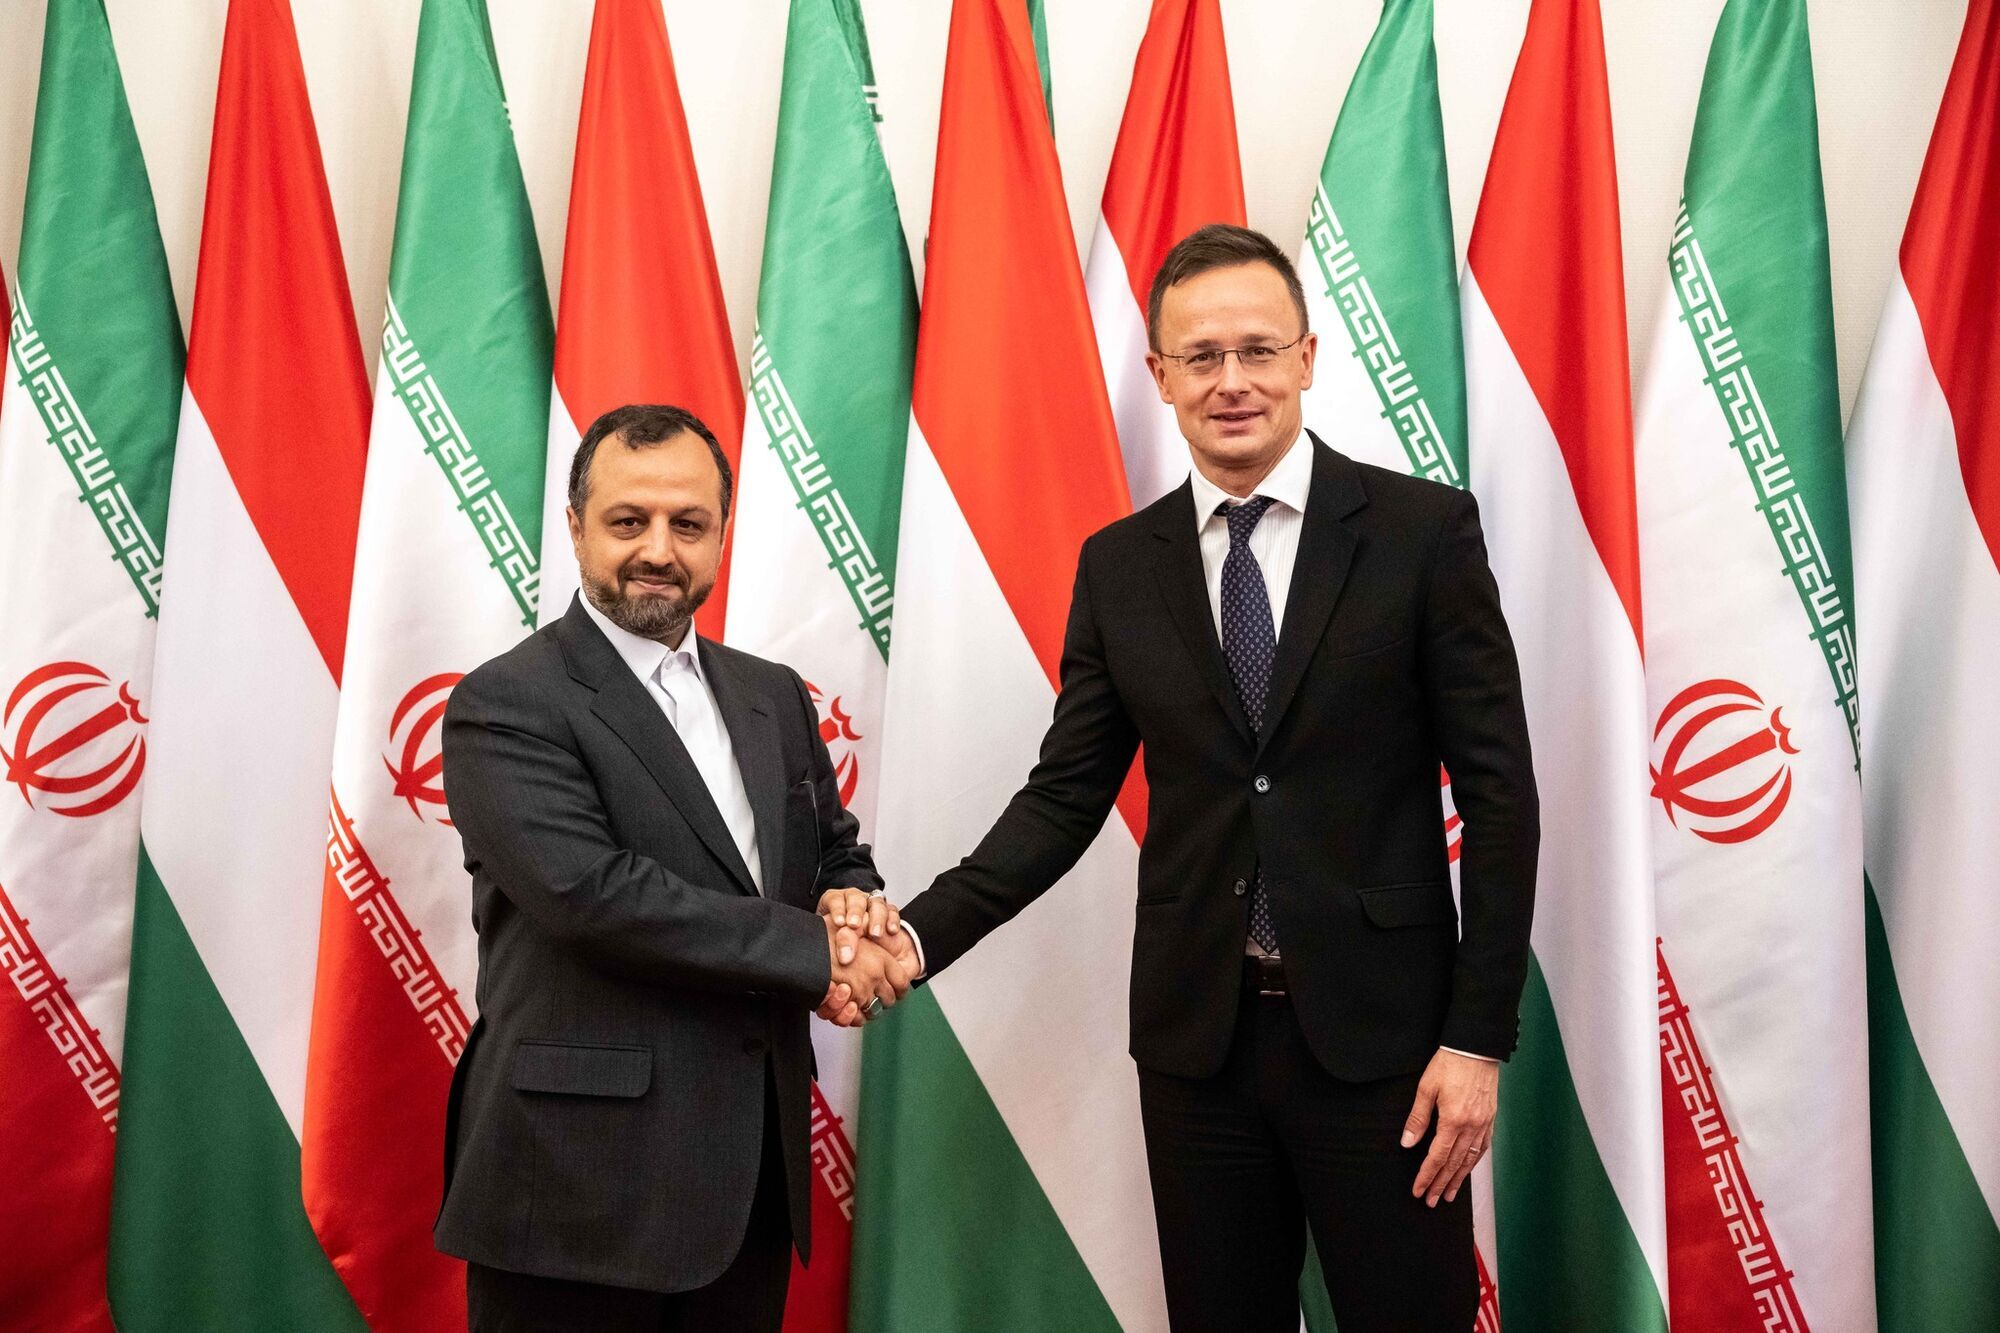 Венгрия официально объявила о начале экономического сотрудничества с Ираном